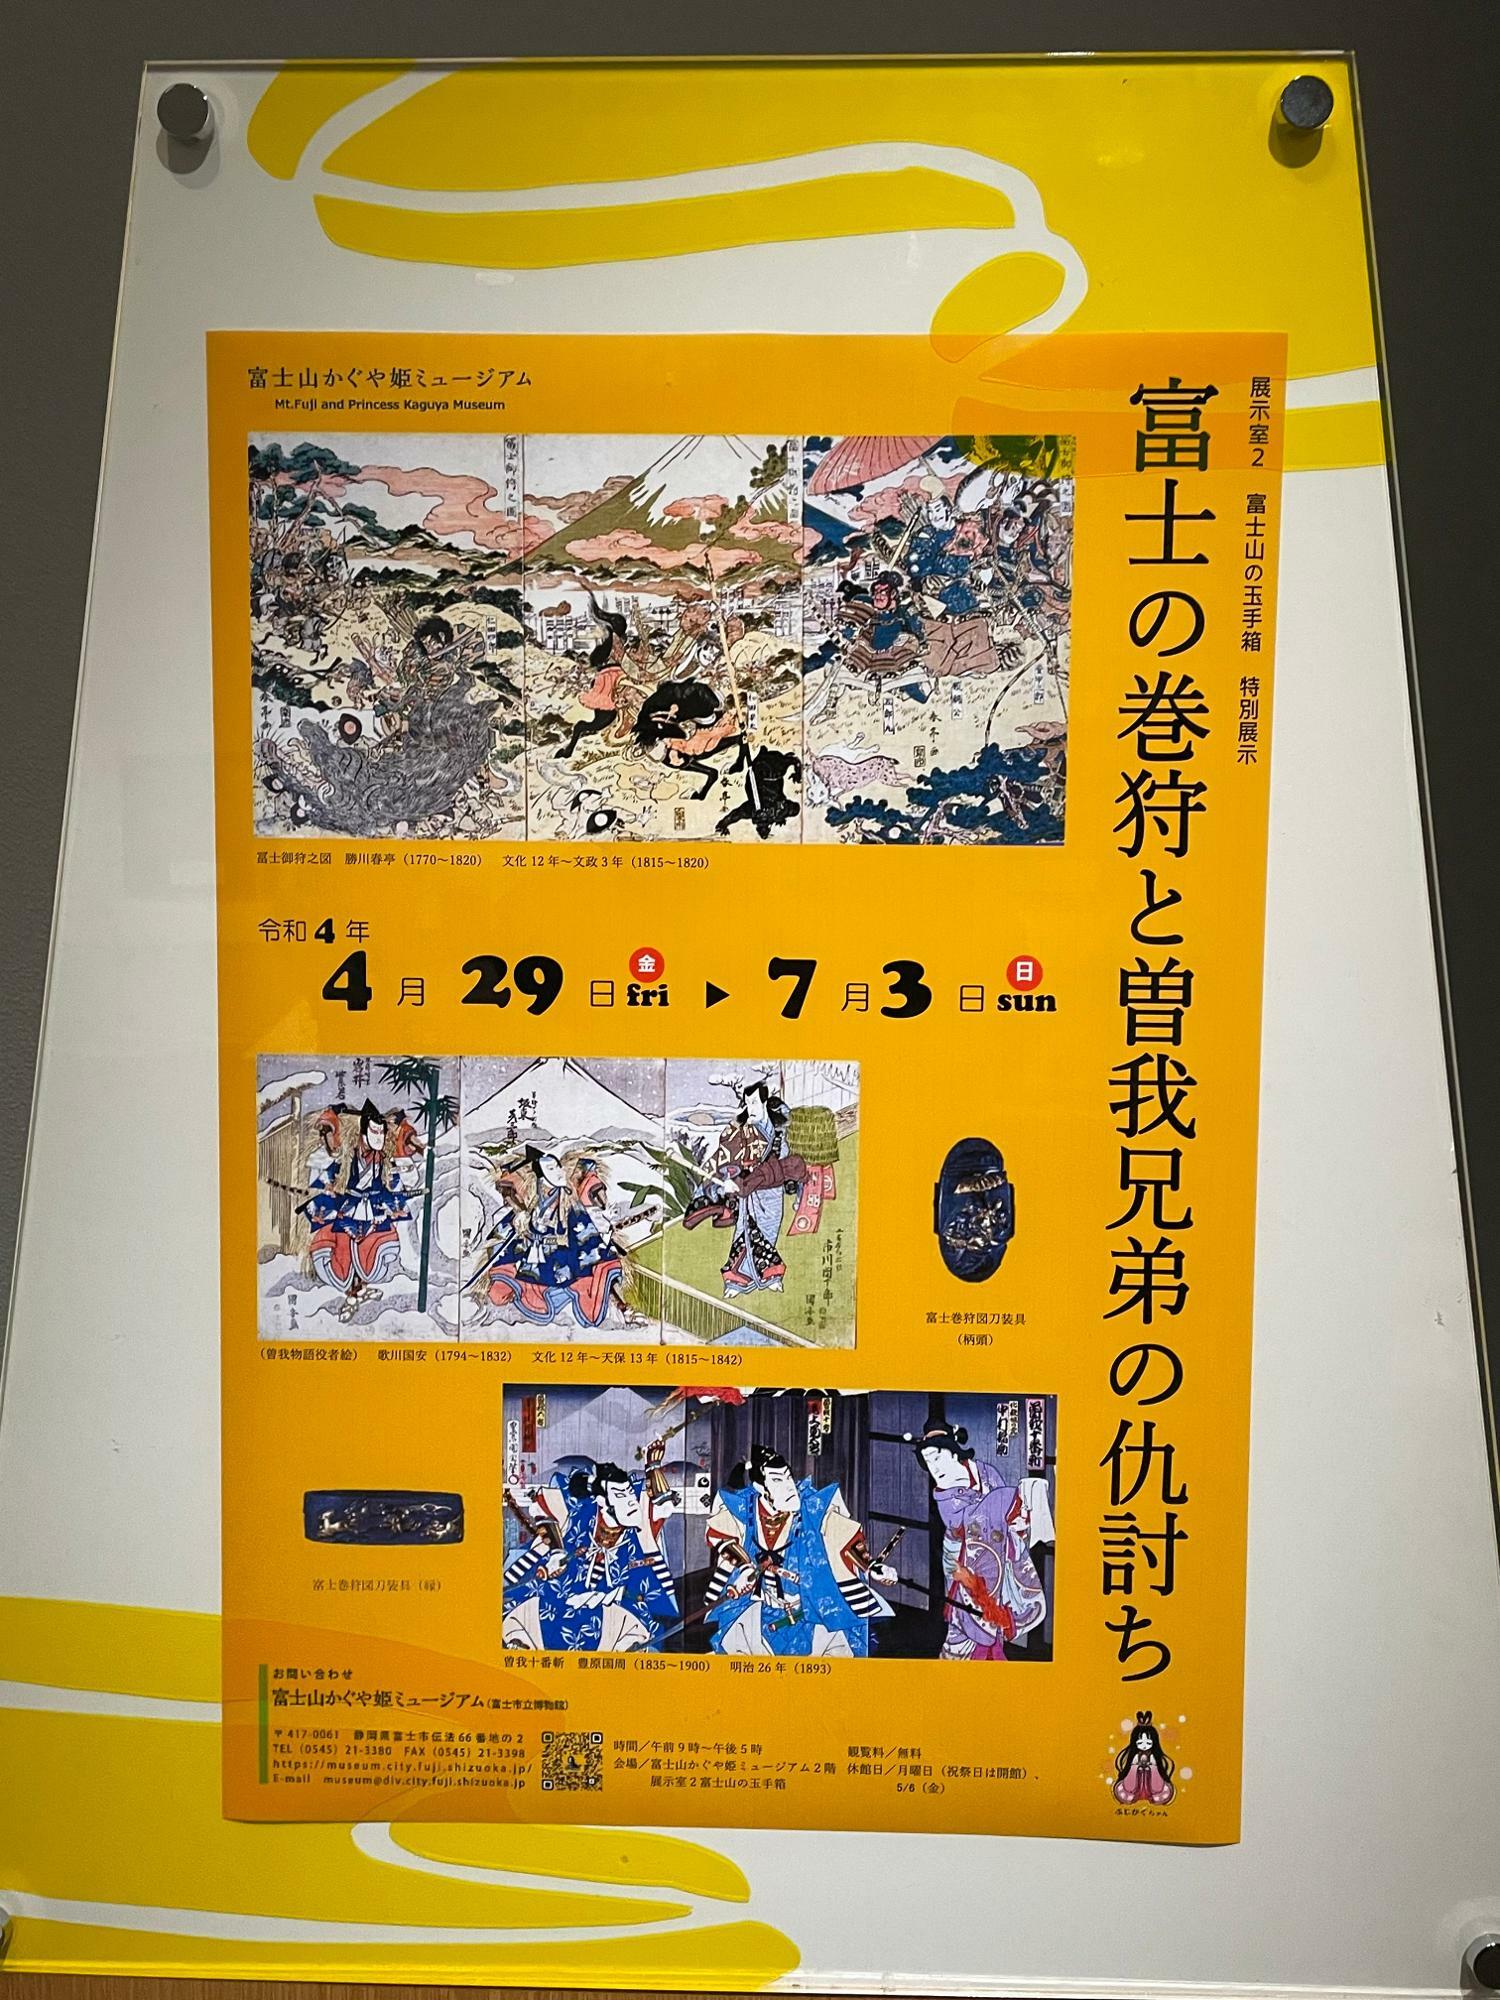 特別展示「富士の巻狩と曽我兄弟の仇討ち」